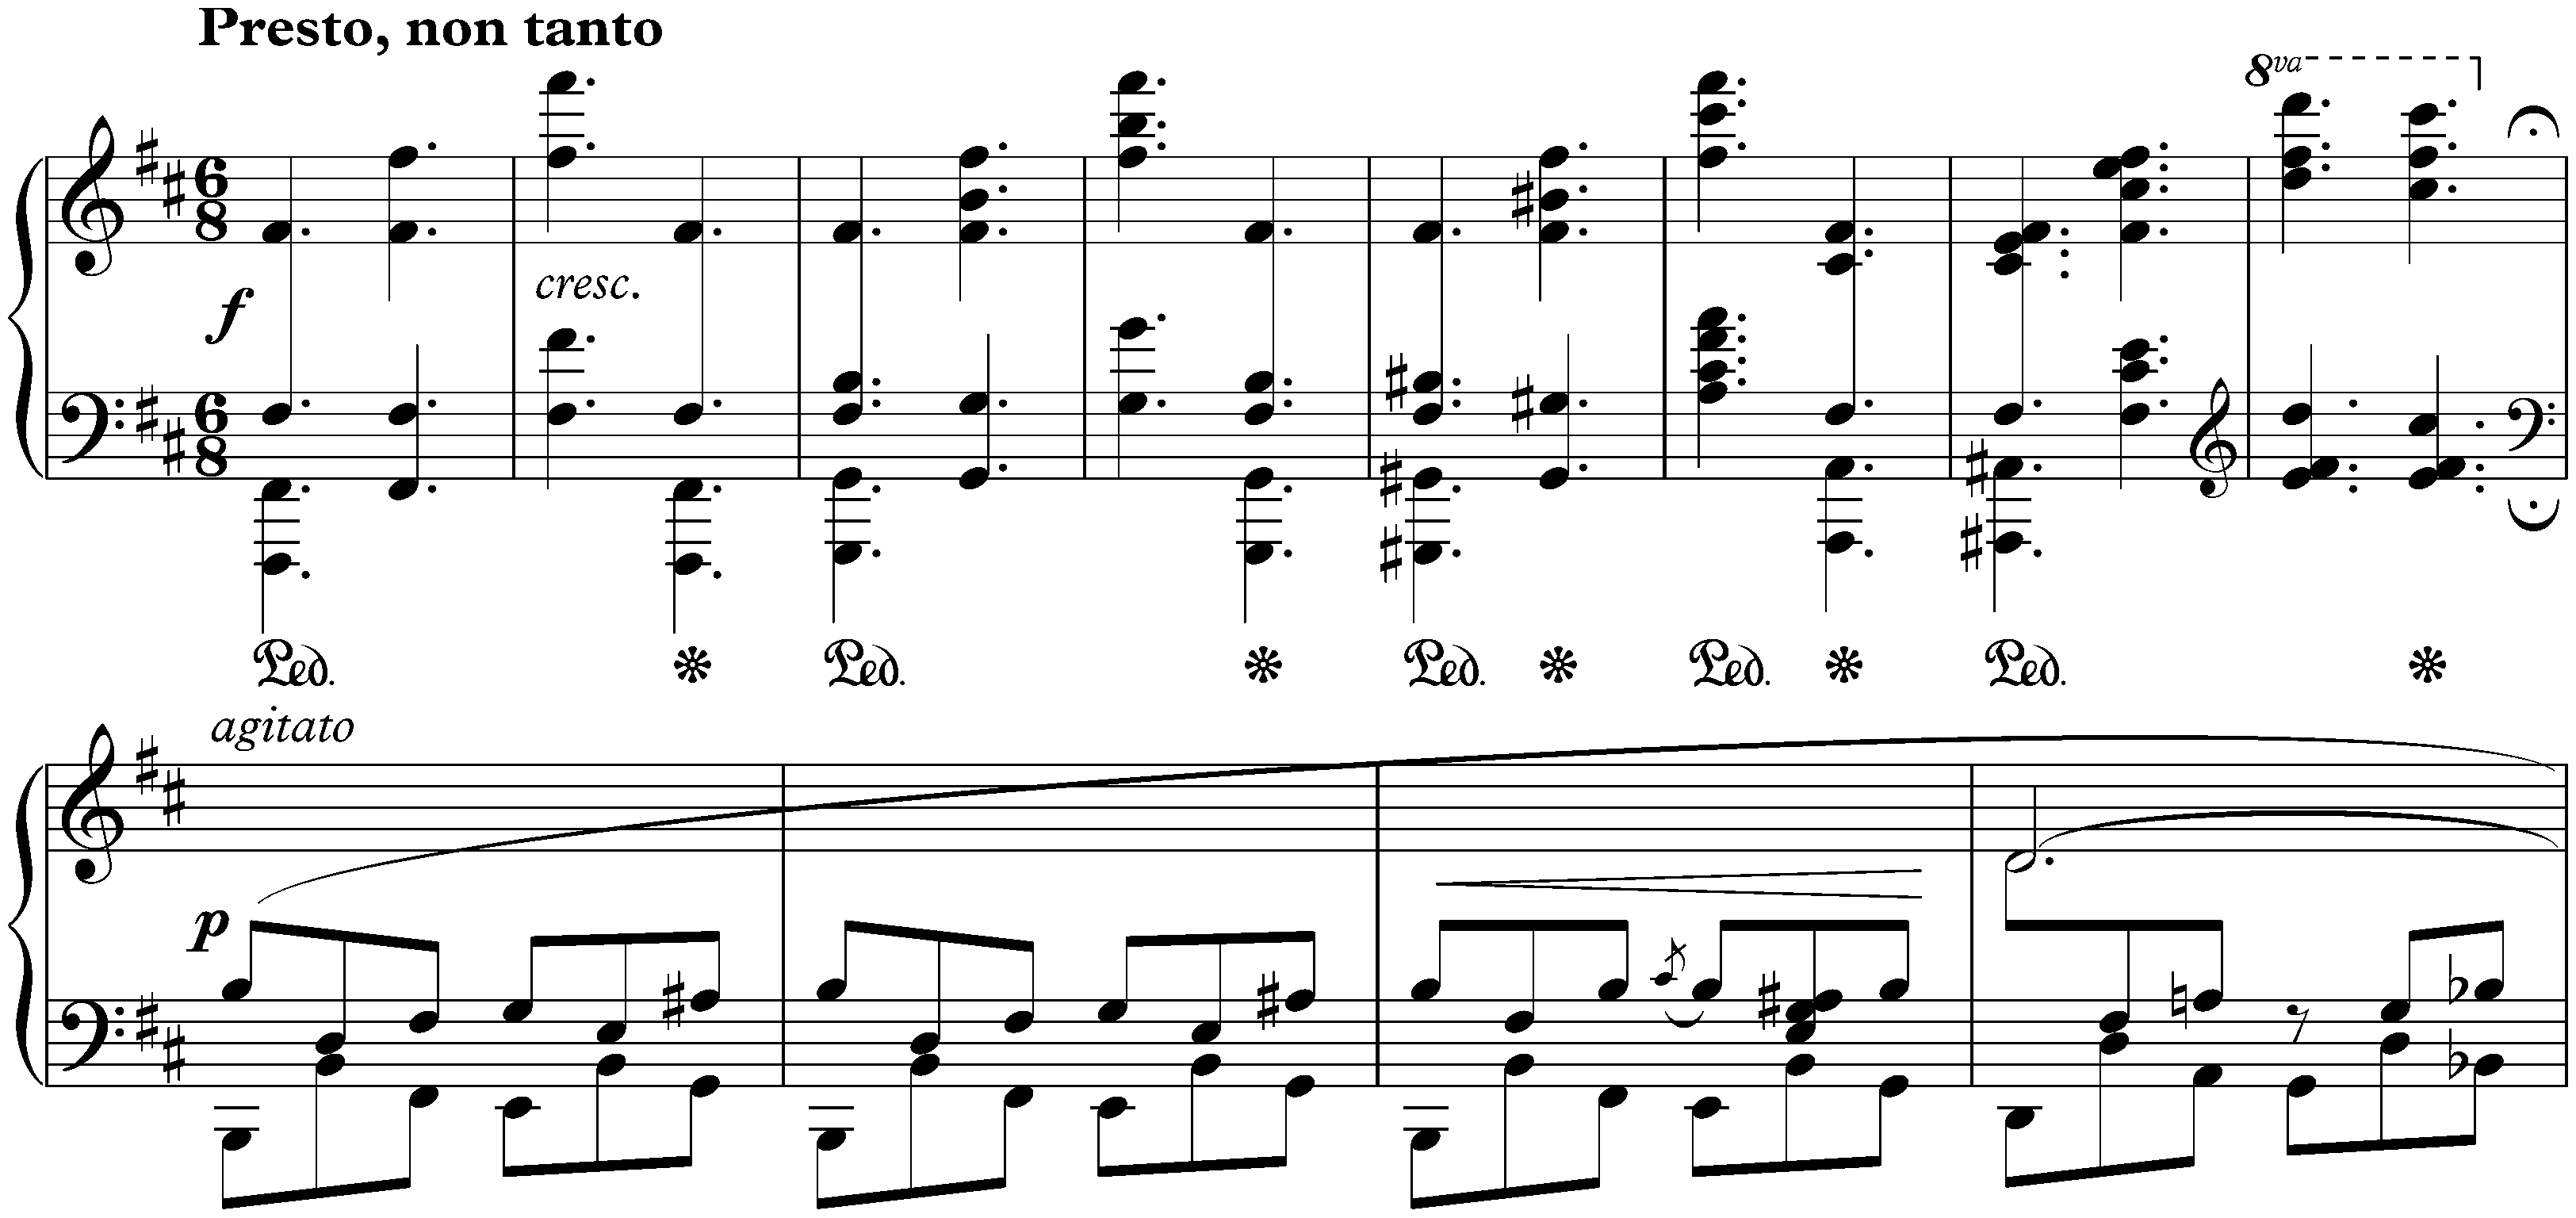 Sonata no. 3 in B minor, op. 58; 4. Finale: Presto, non tanto